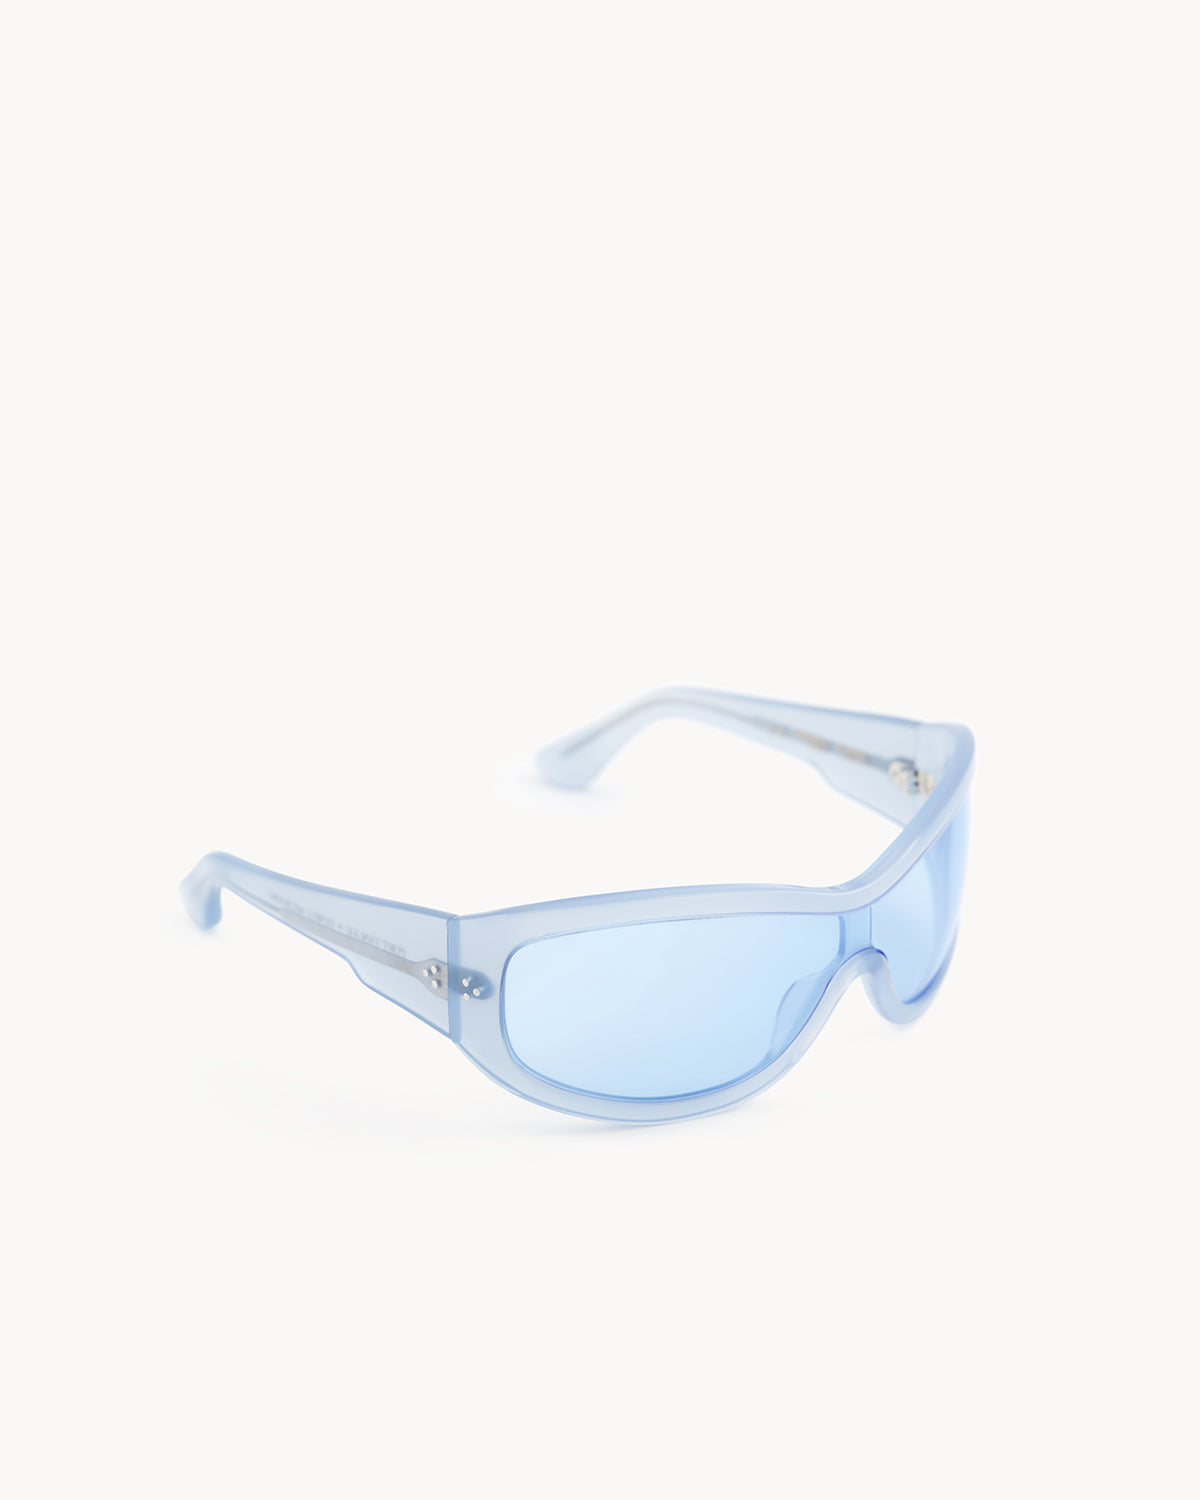 Port Tanger Nunny Sunglasses in Rif Blue Acetate and Rif Blue Lenses 2